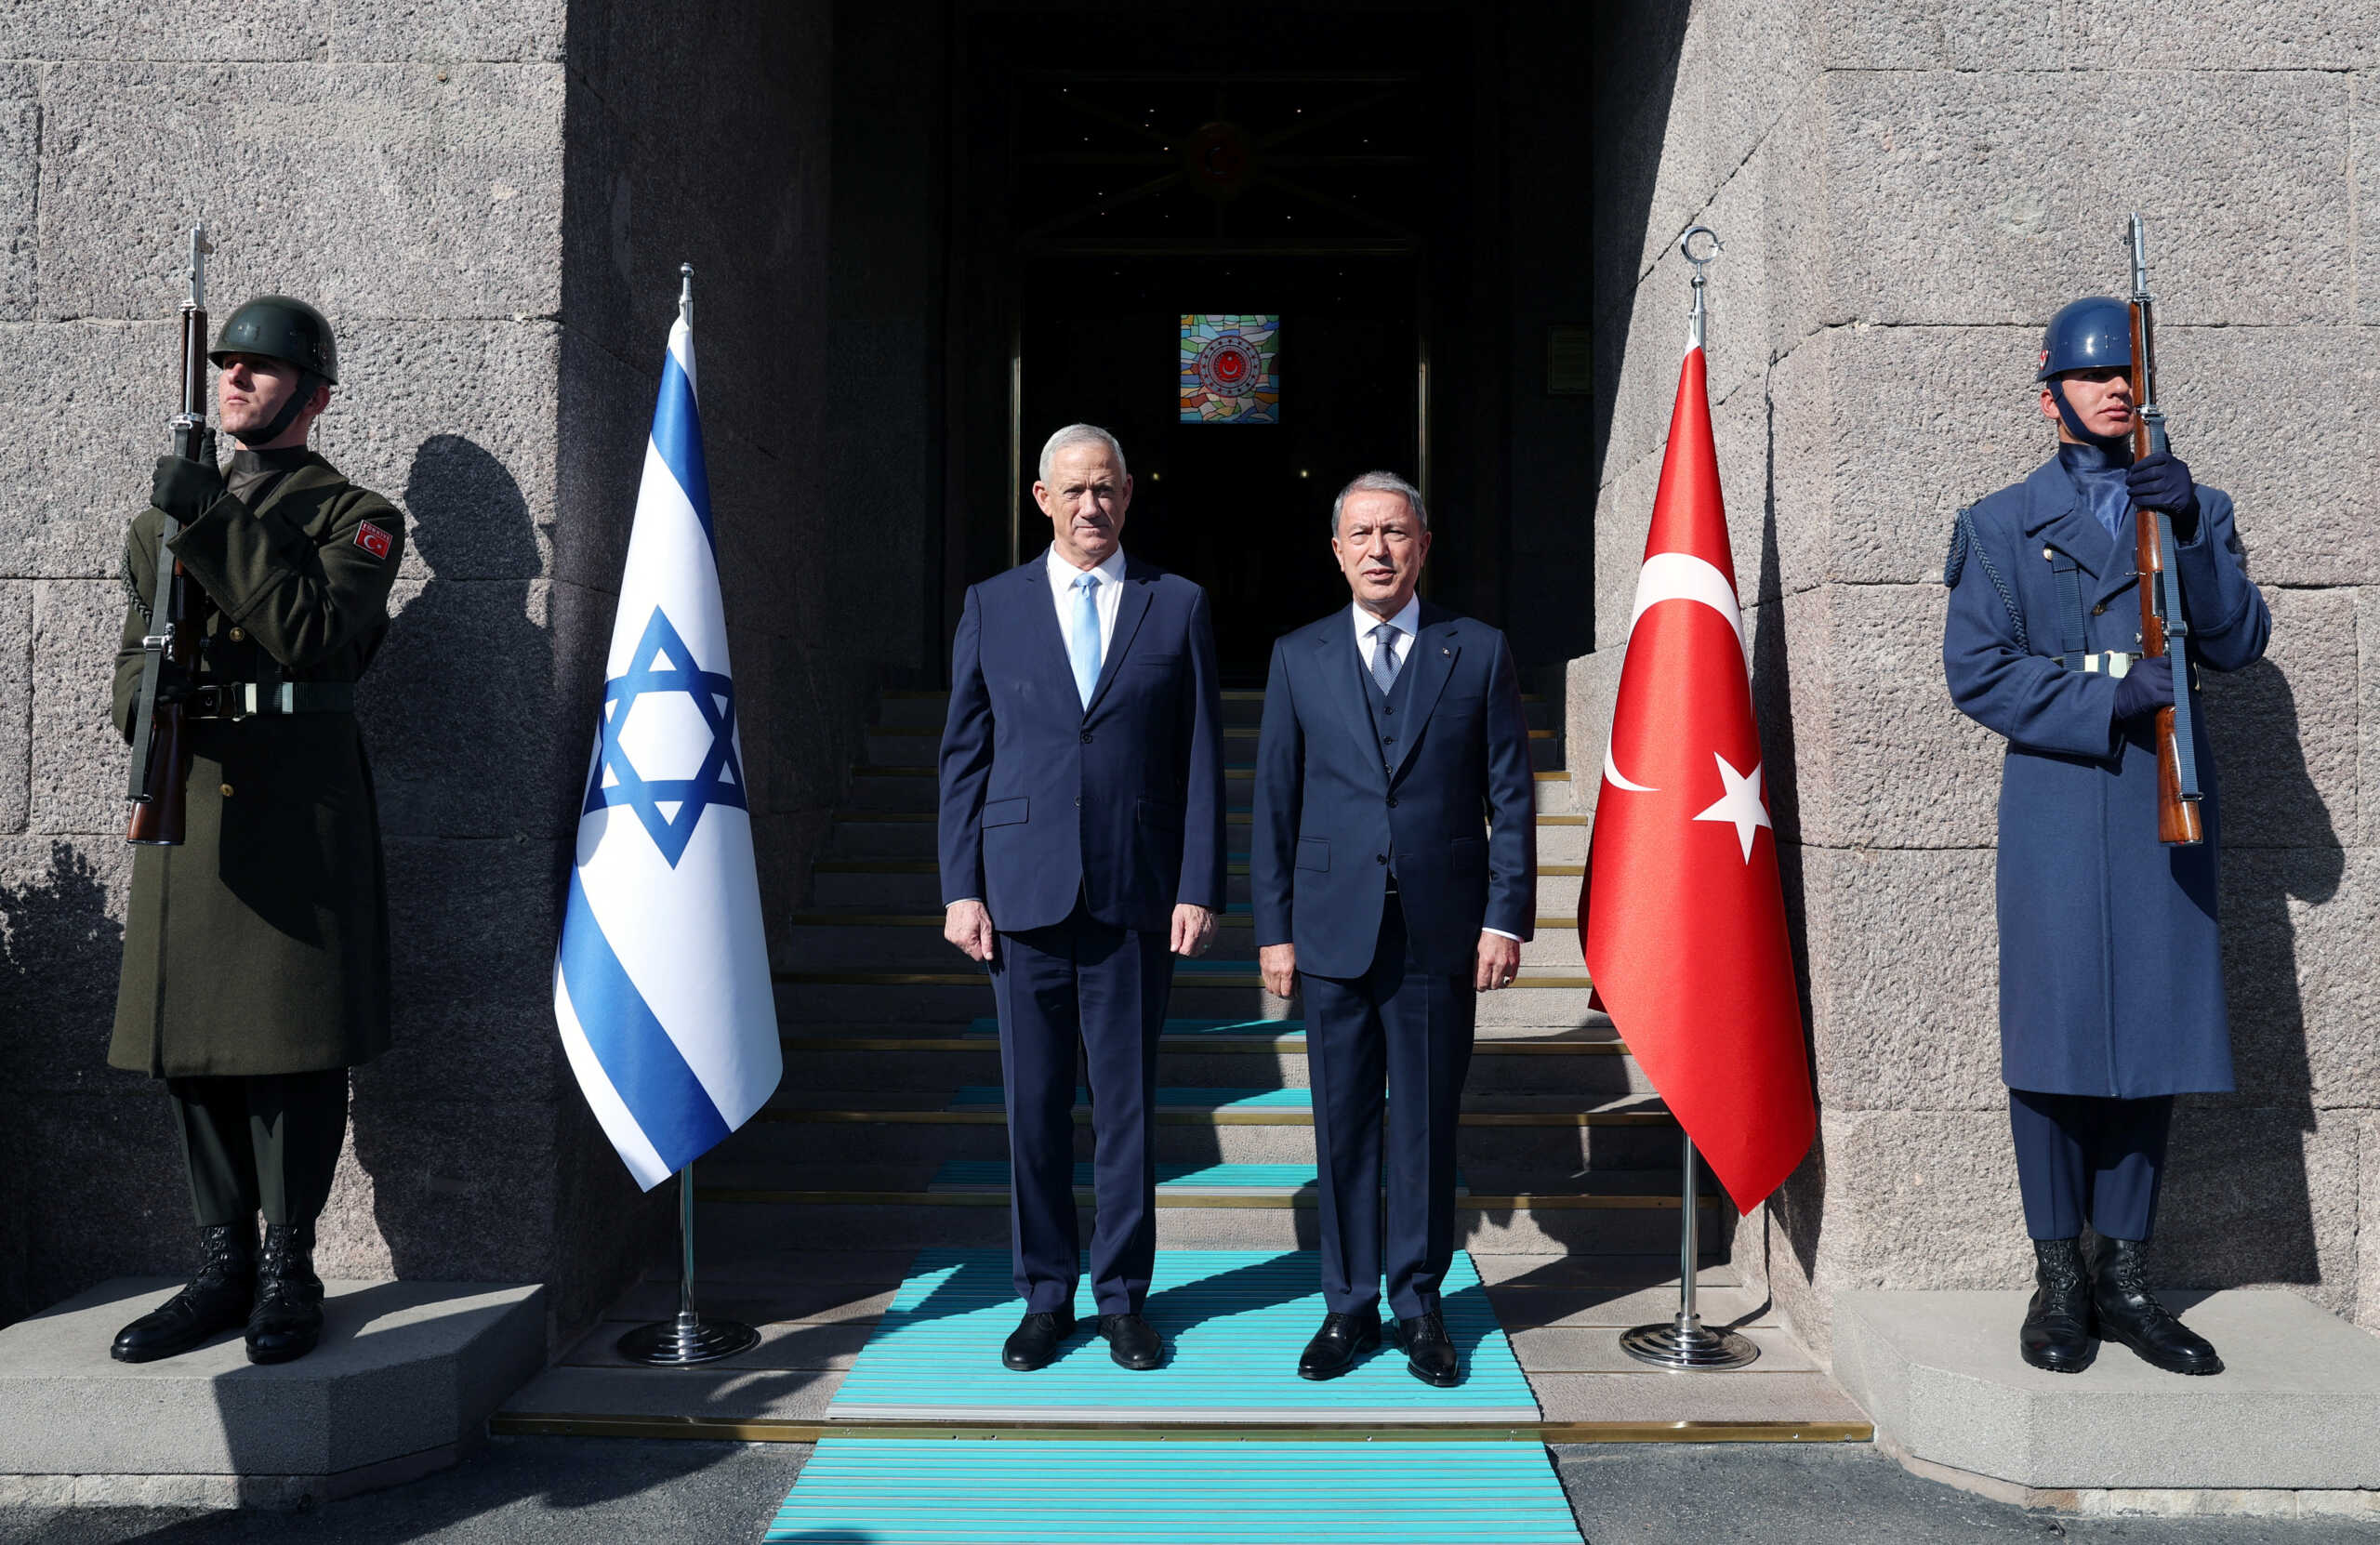 Τουρκία – Ισραήλ: Να «ξεπαγώσουν» τις διμερείς σχέσεις αποφάσισαν Γκαντζ και Ακάρ – Η αναφορά στην Ελλάδα